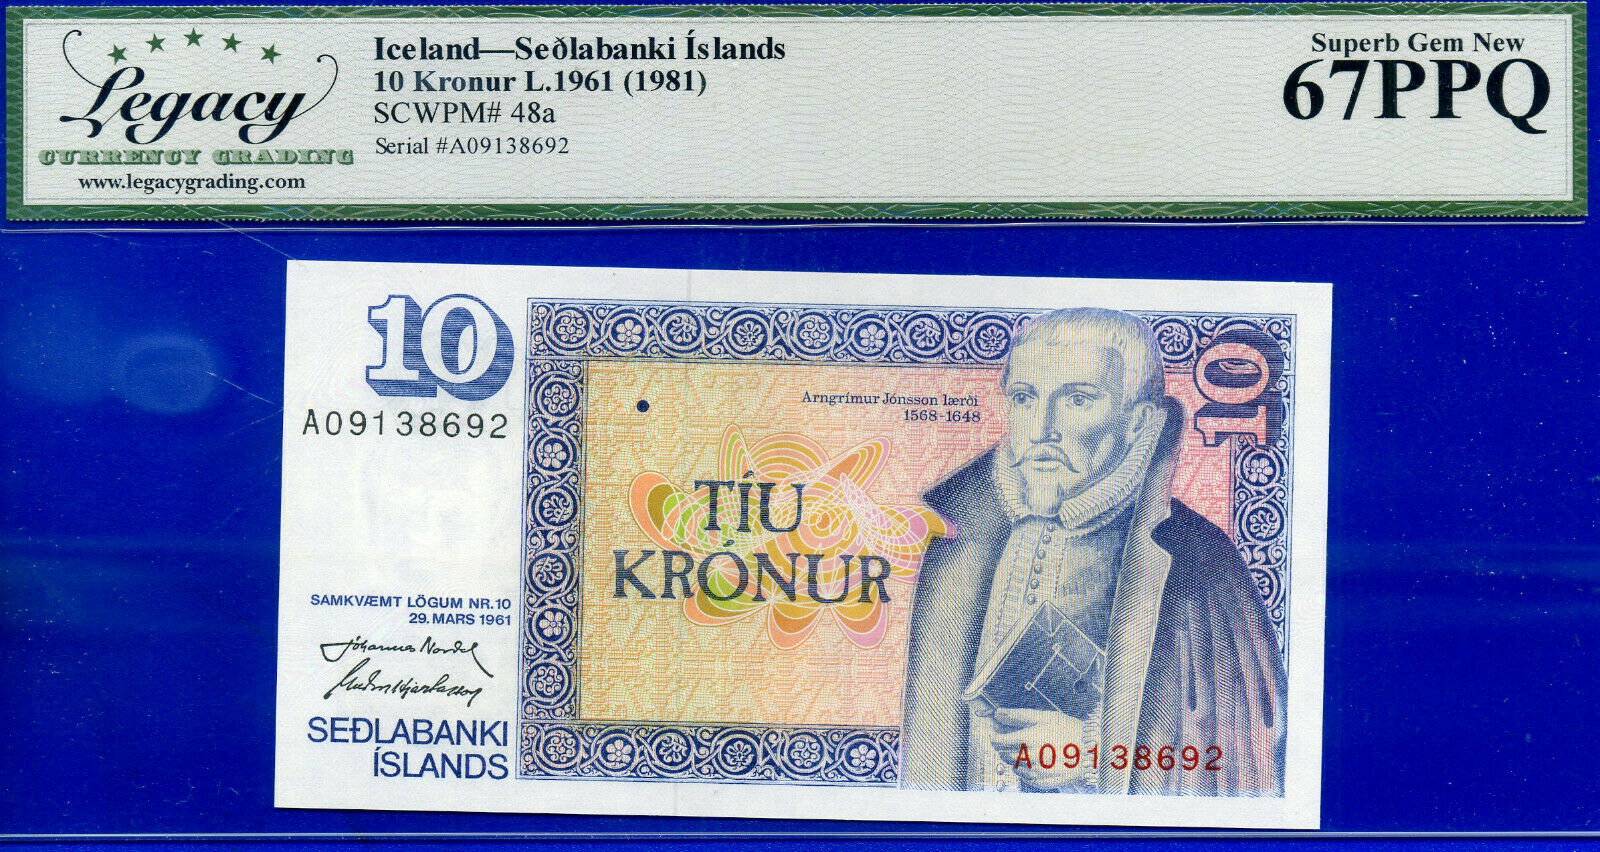 Iceland - L.1961 Sedlabanki Islands -10 Kronur -scwpm# 48a - Superb-gem  #138692